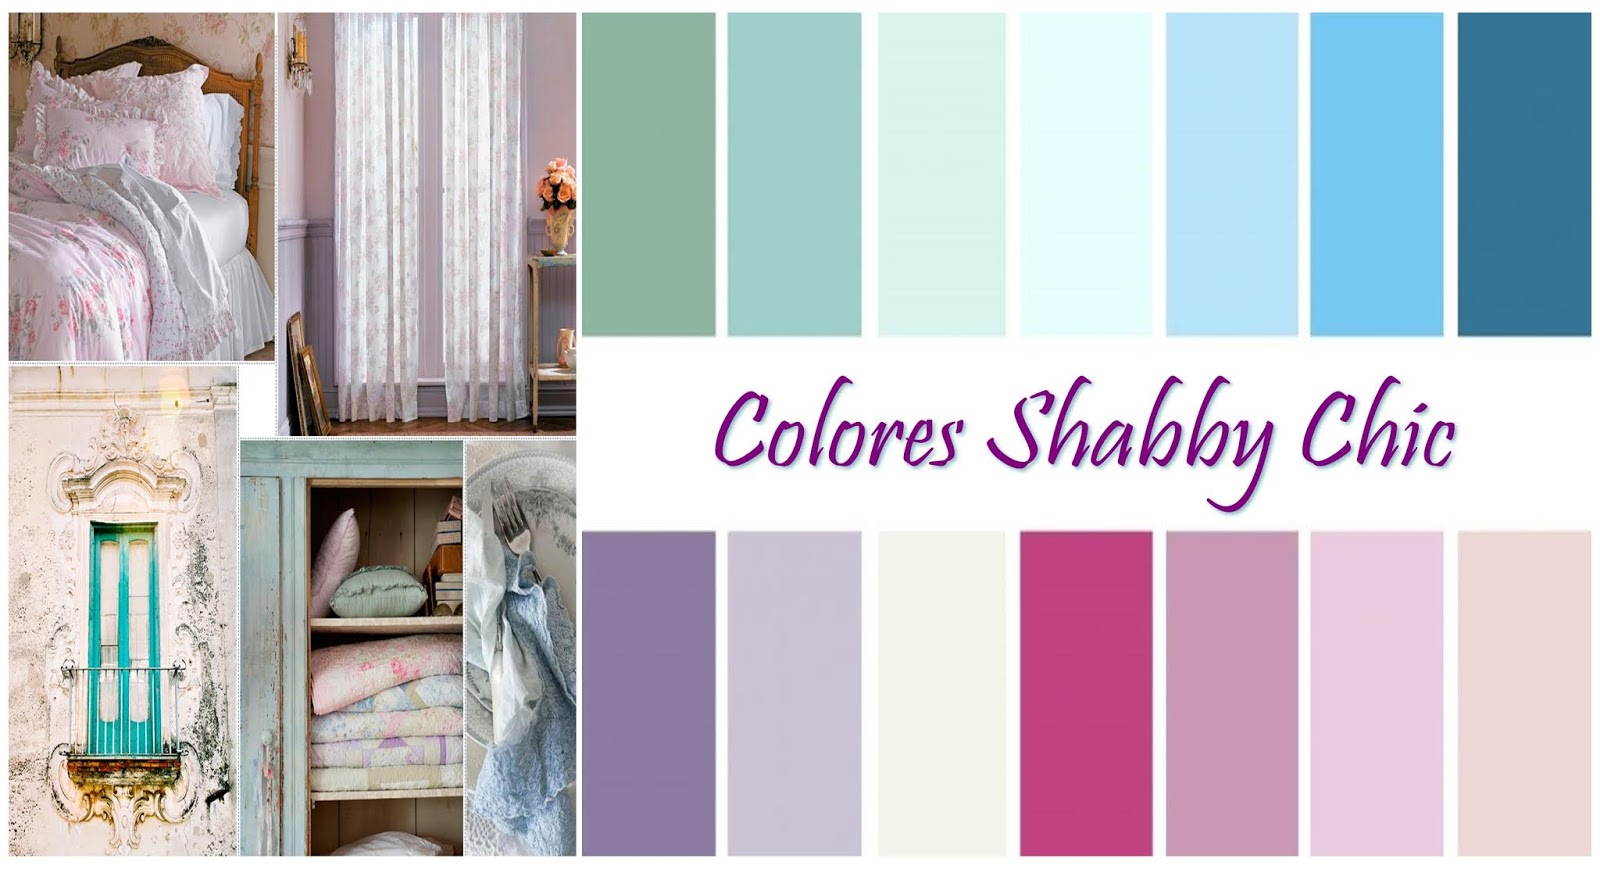 Shabby Chic - jakie kolory wykorzystuje?